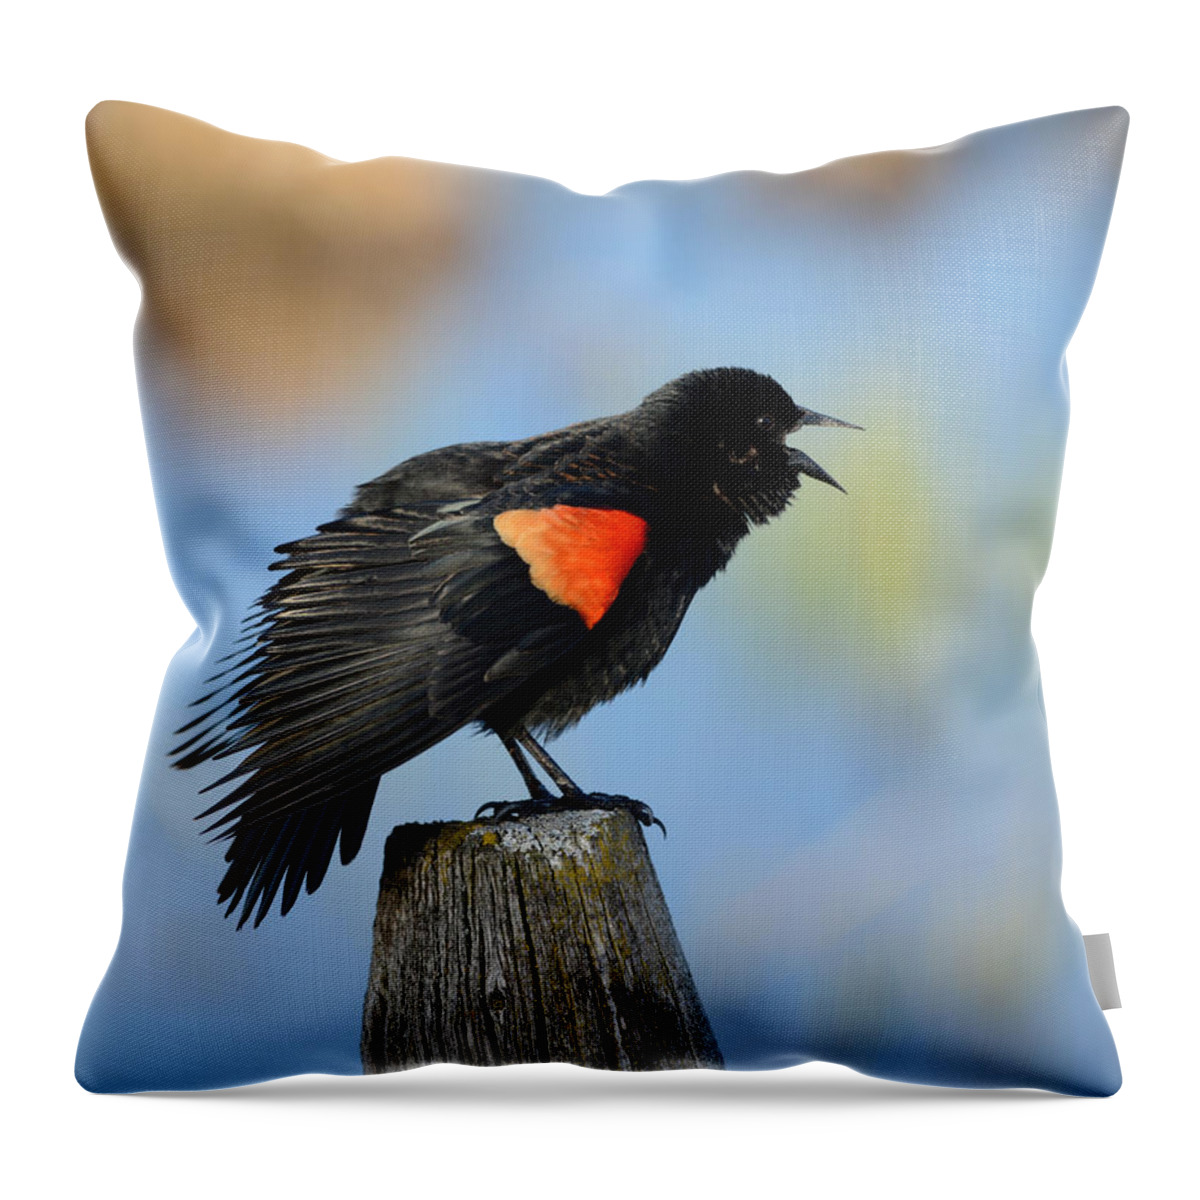 Blackbird Throw Pillow featuring the photograph Redwing Blackbird by Whispering Peaks Photography